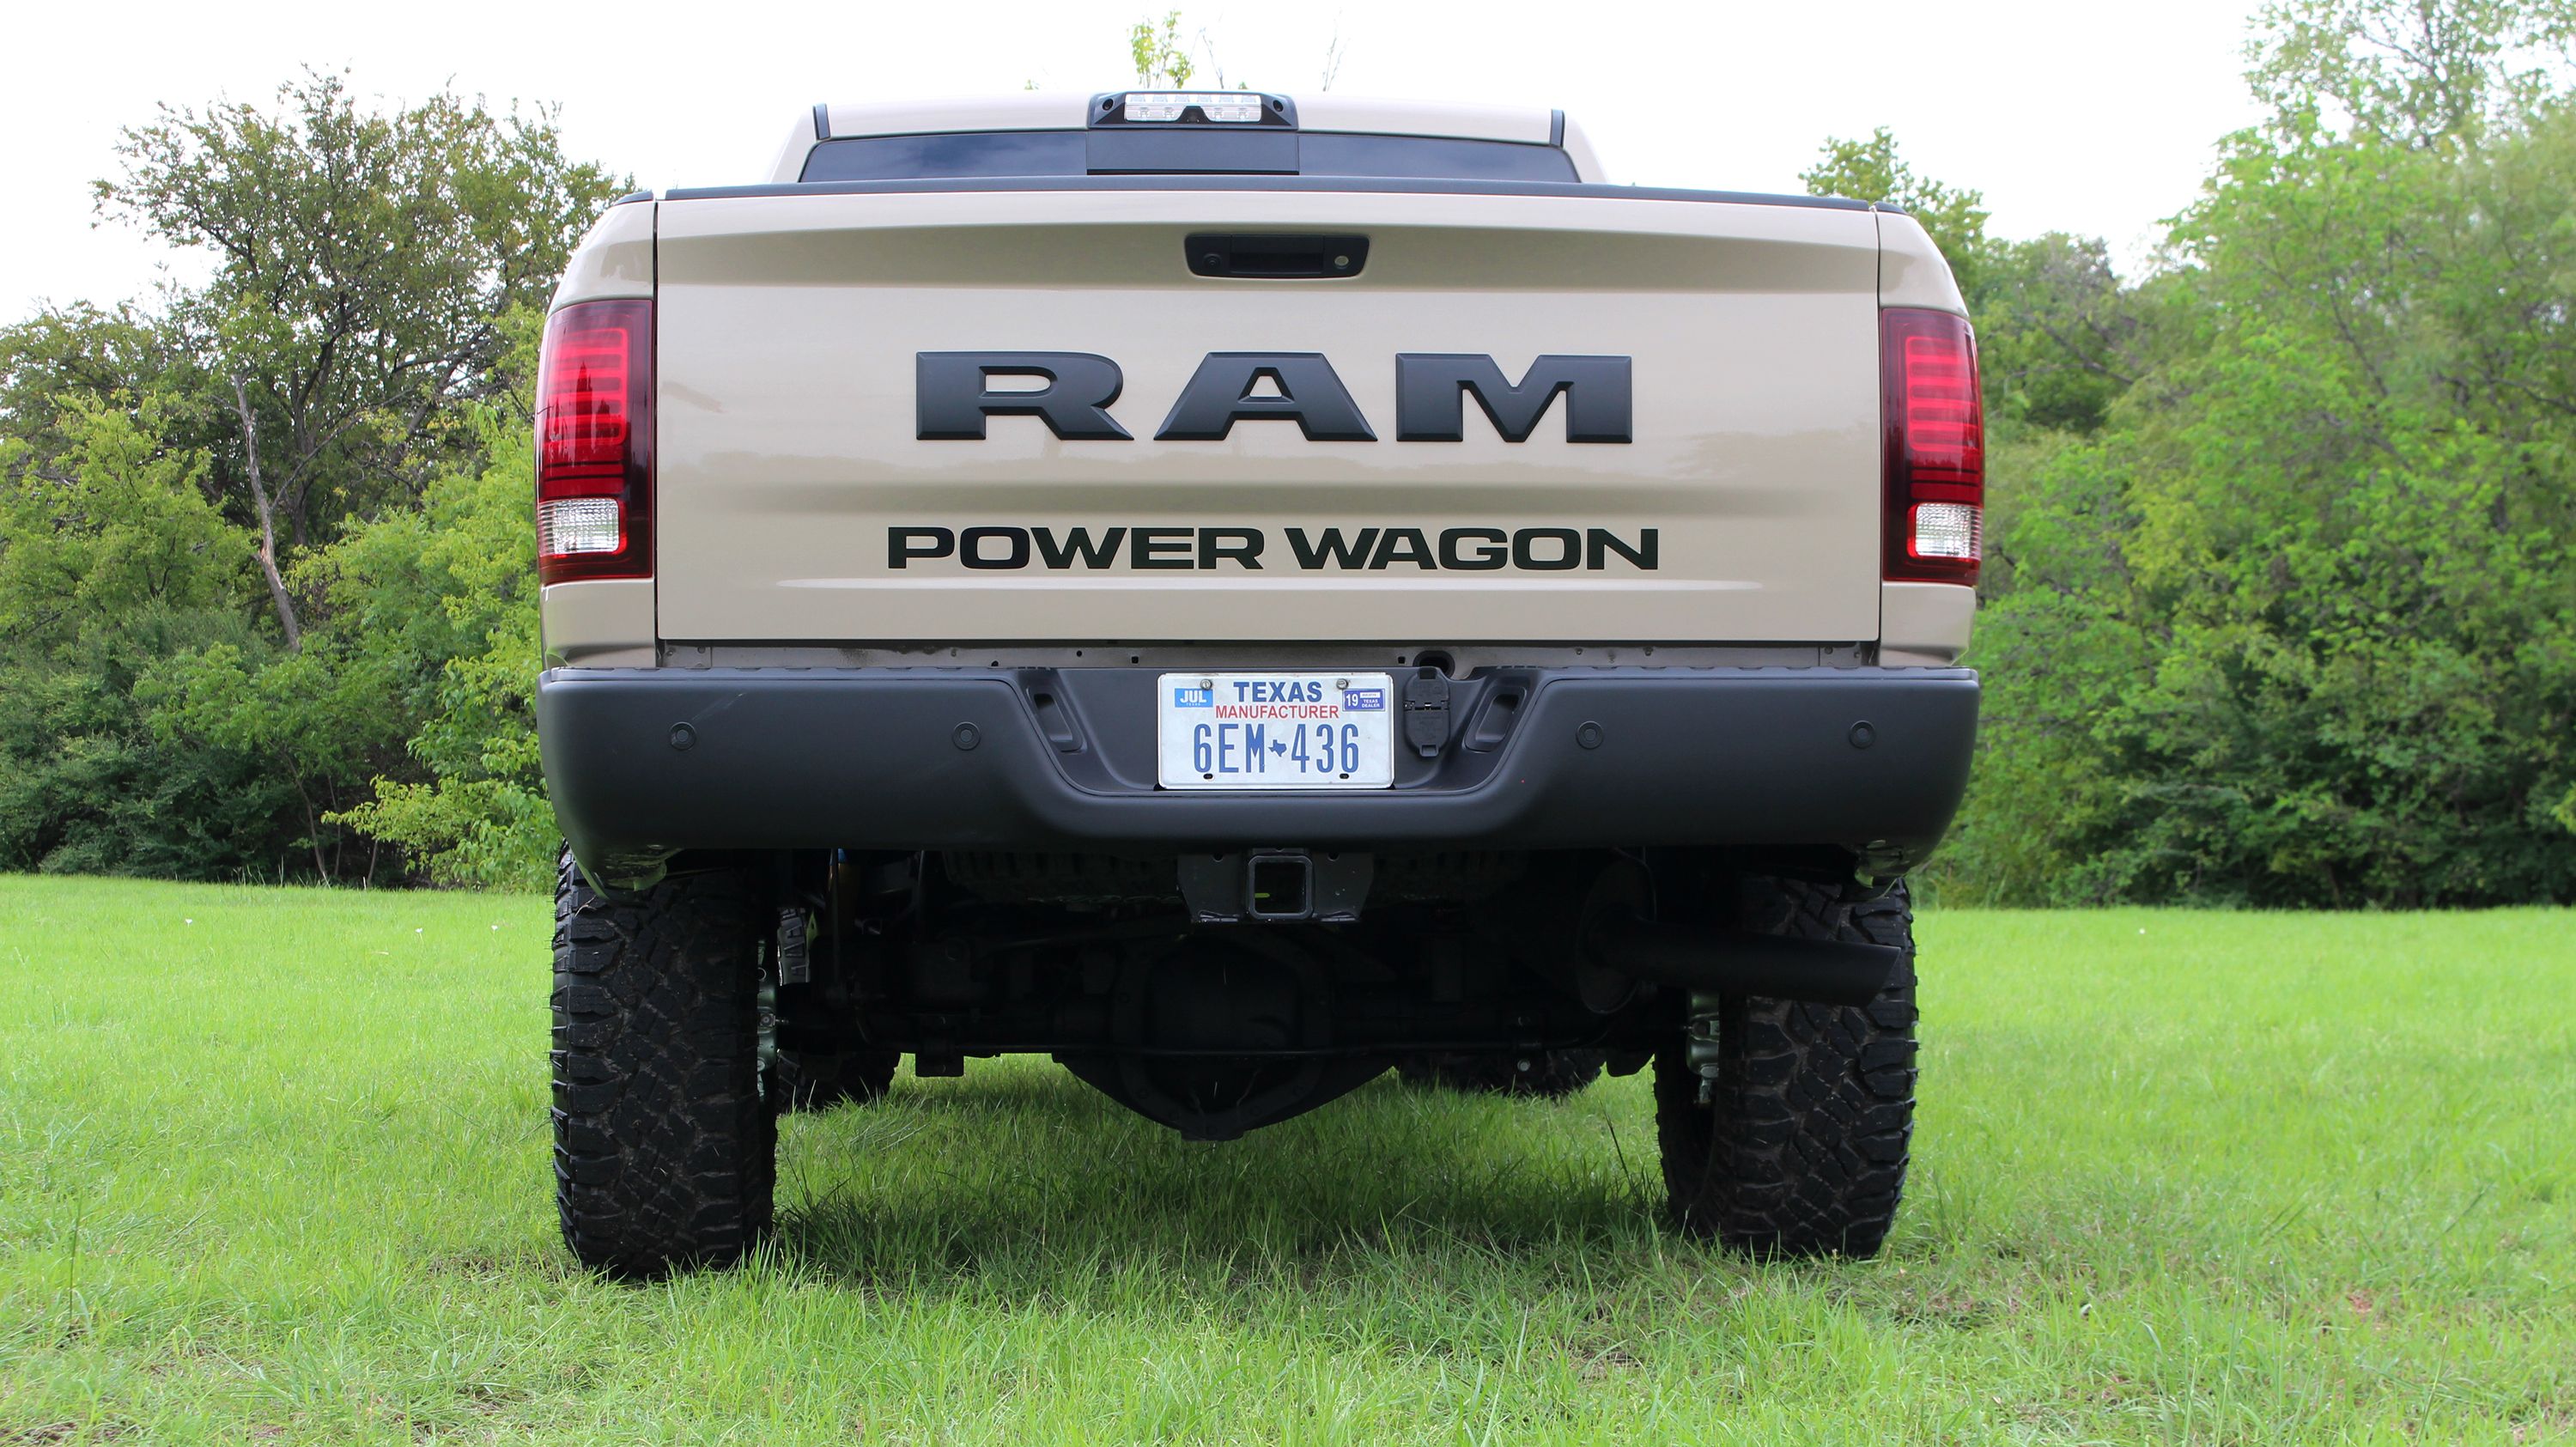 2018 Ram 2500 Power Wagon Mojave Sand Edition